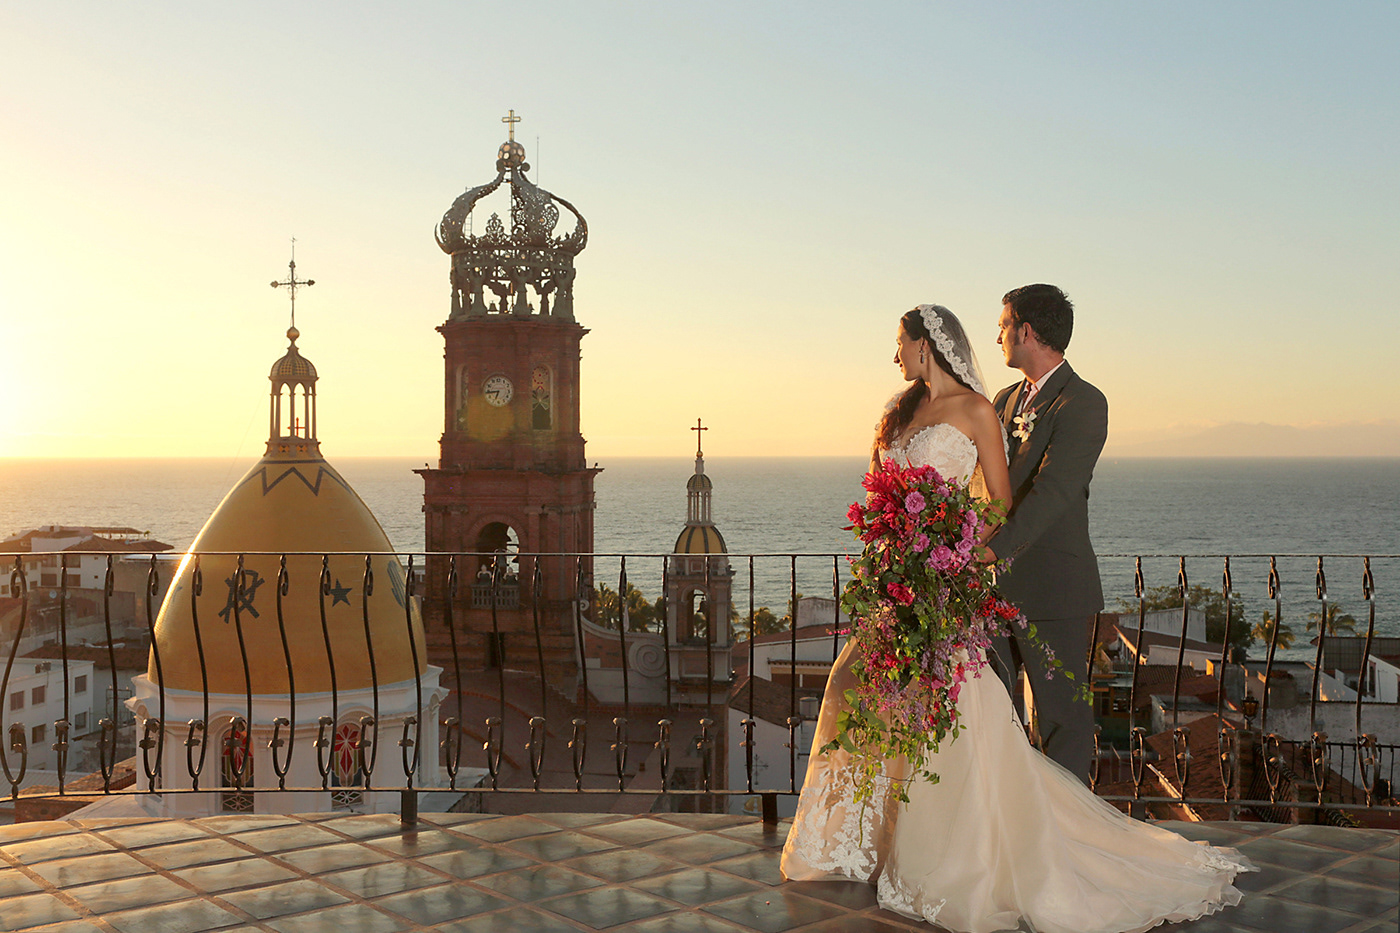 wedding stationery wedding invite rsvp Boda puerto vallarta mexico